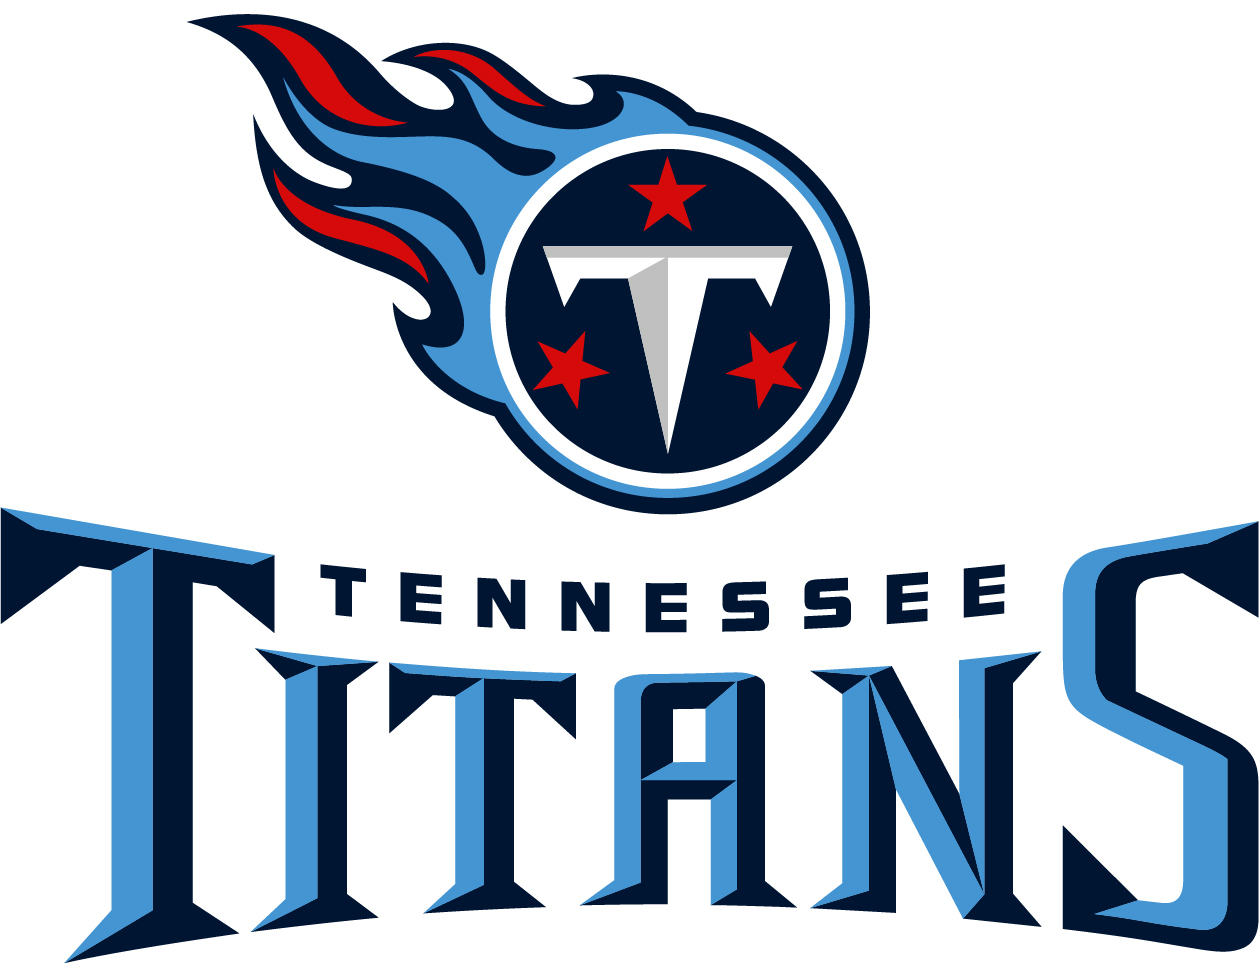 Tennessee Titans - Logo und Schrift